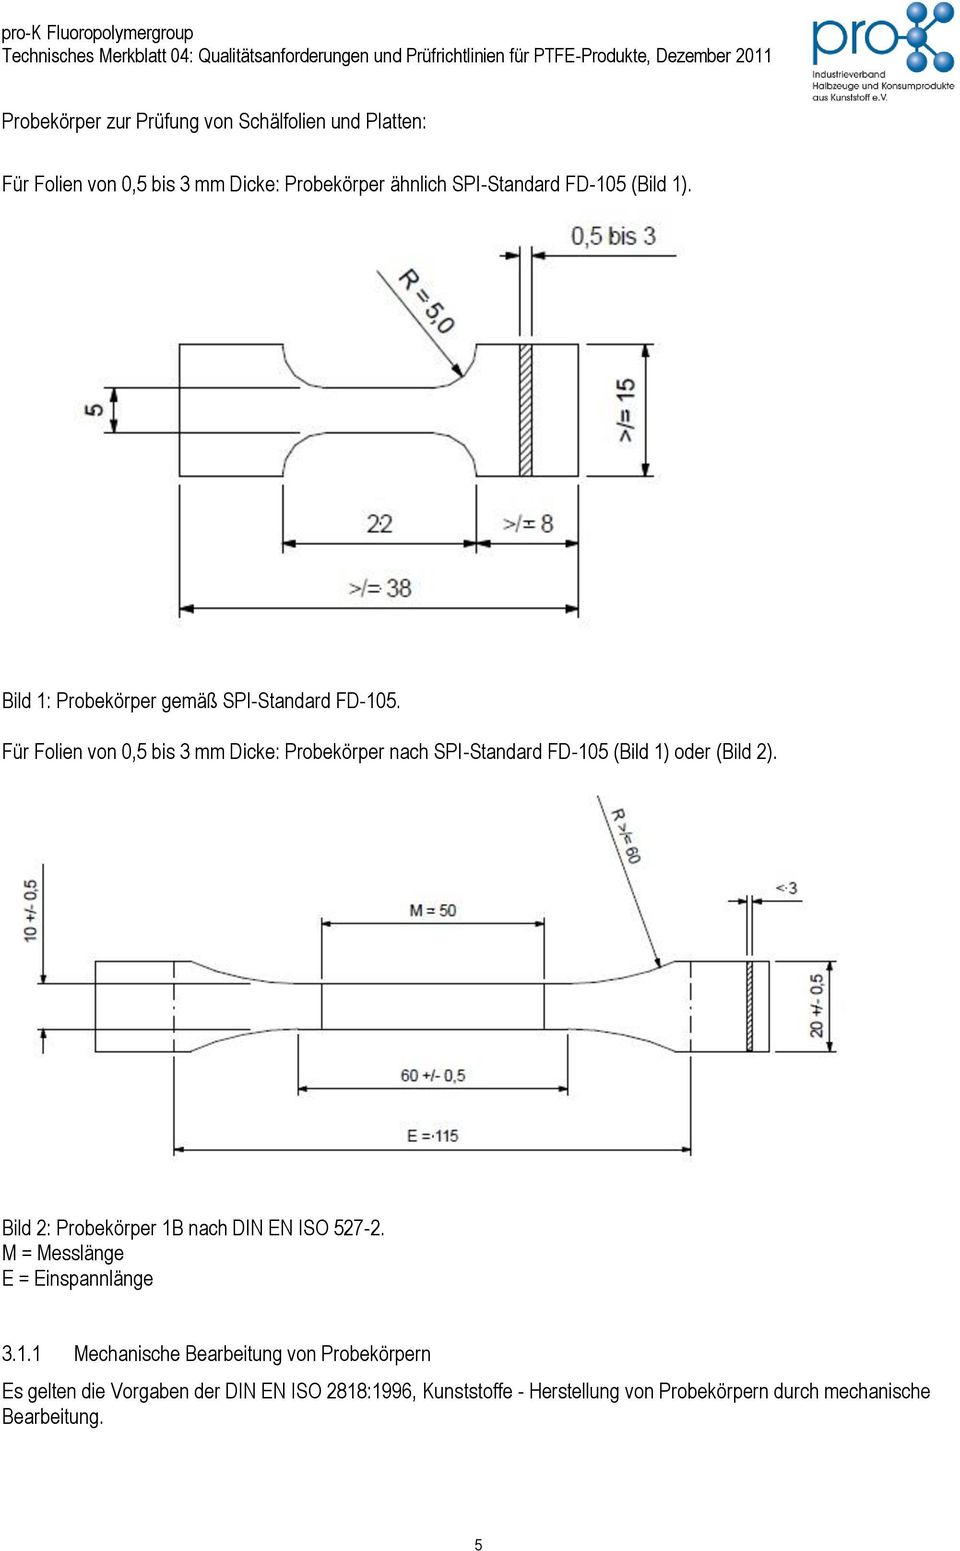 Für Folien von 0,5 bis 3 mm Dicke: Probekörper nach SPI-Standard FD-105 (Bild 1) oder (Bild 2).